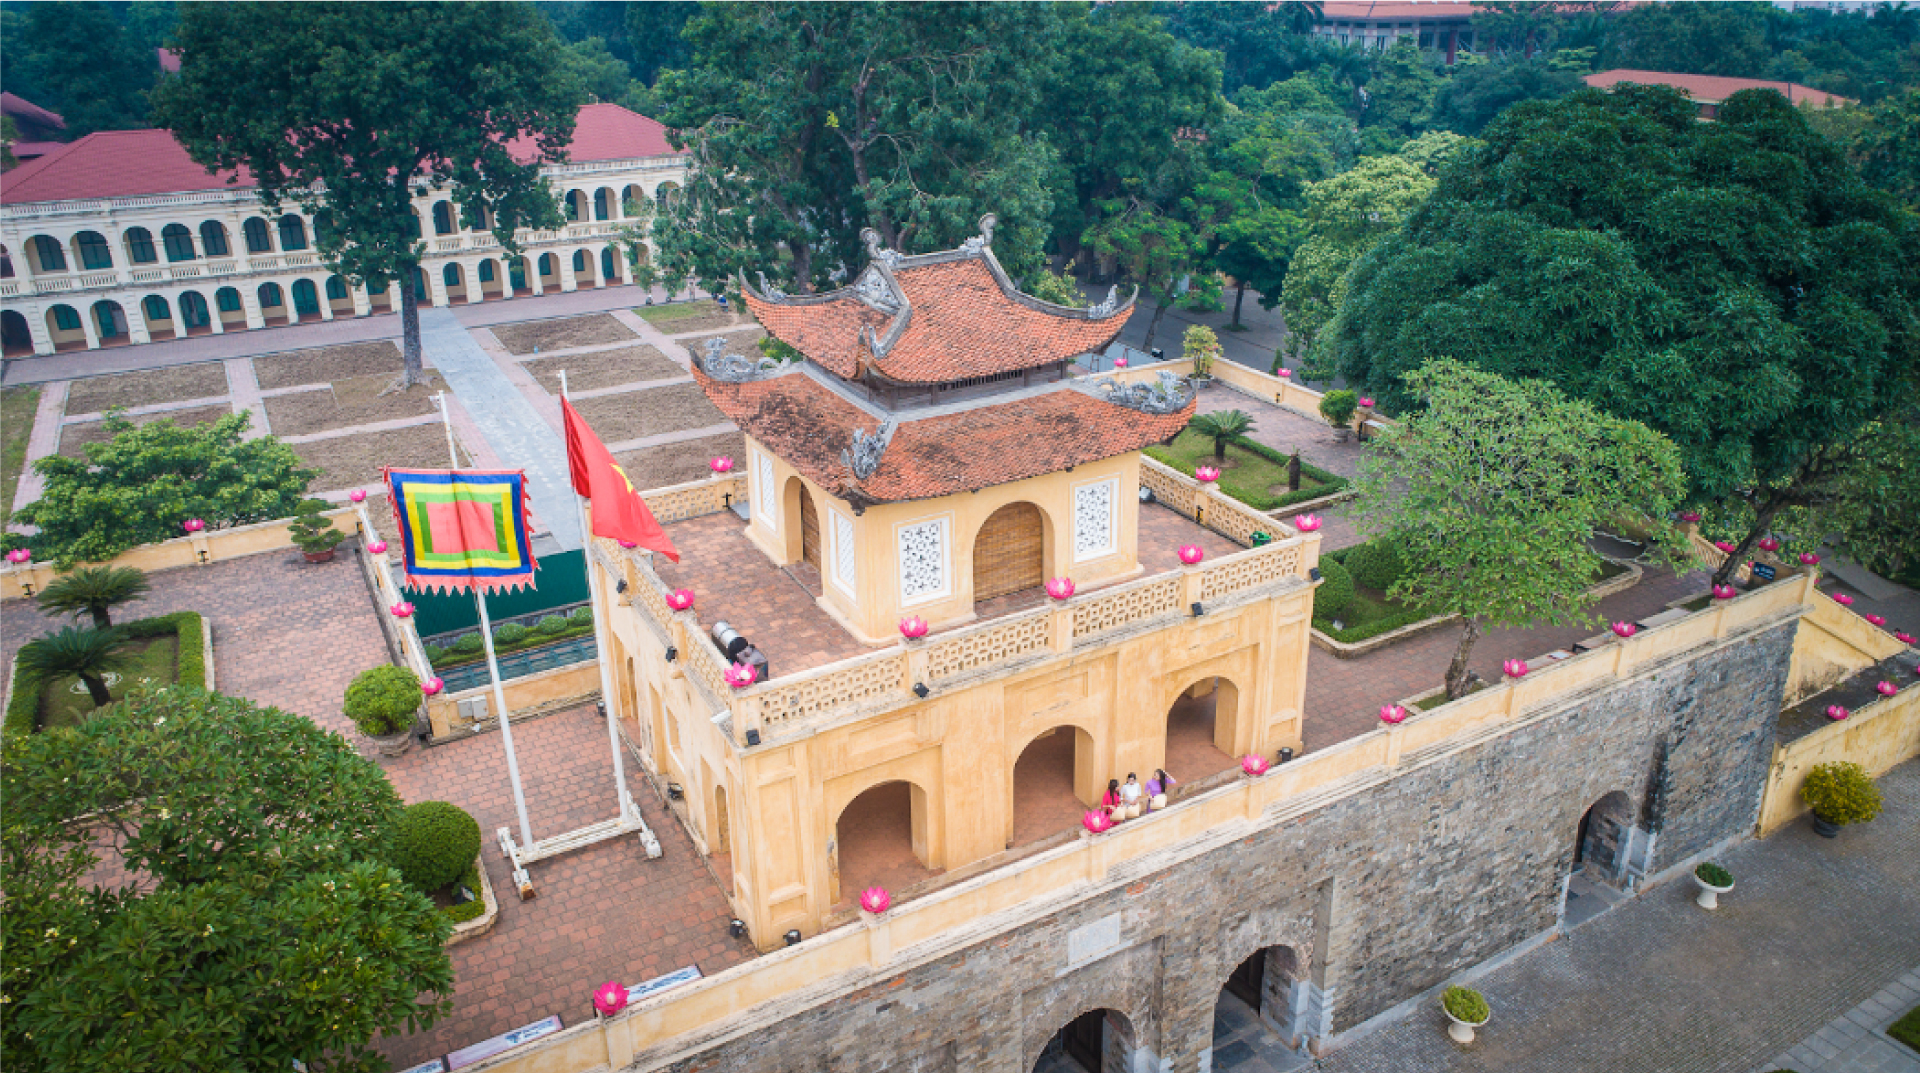 Văn hóa Thăng Long-Hà Nội ngàn năm hội tụ - Bài 1: Phát triển Thủ đô bằng giá trị lịch sử và nguồn lực văn hóa